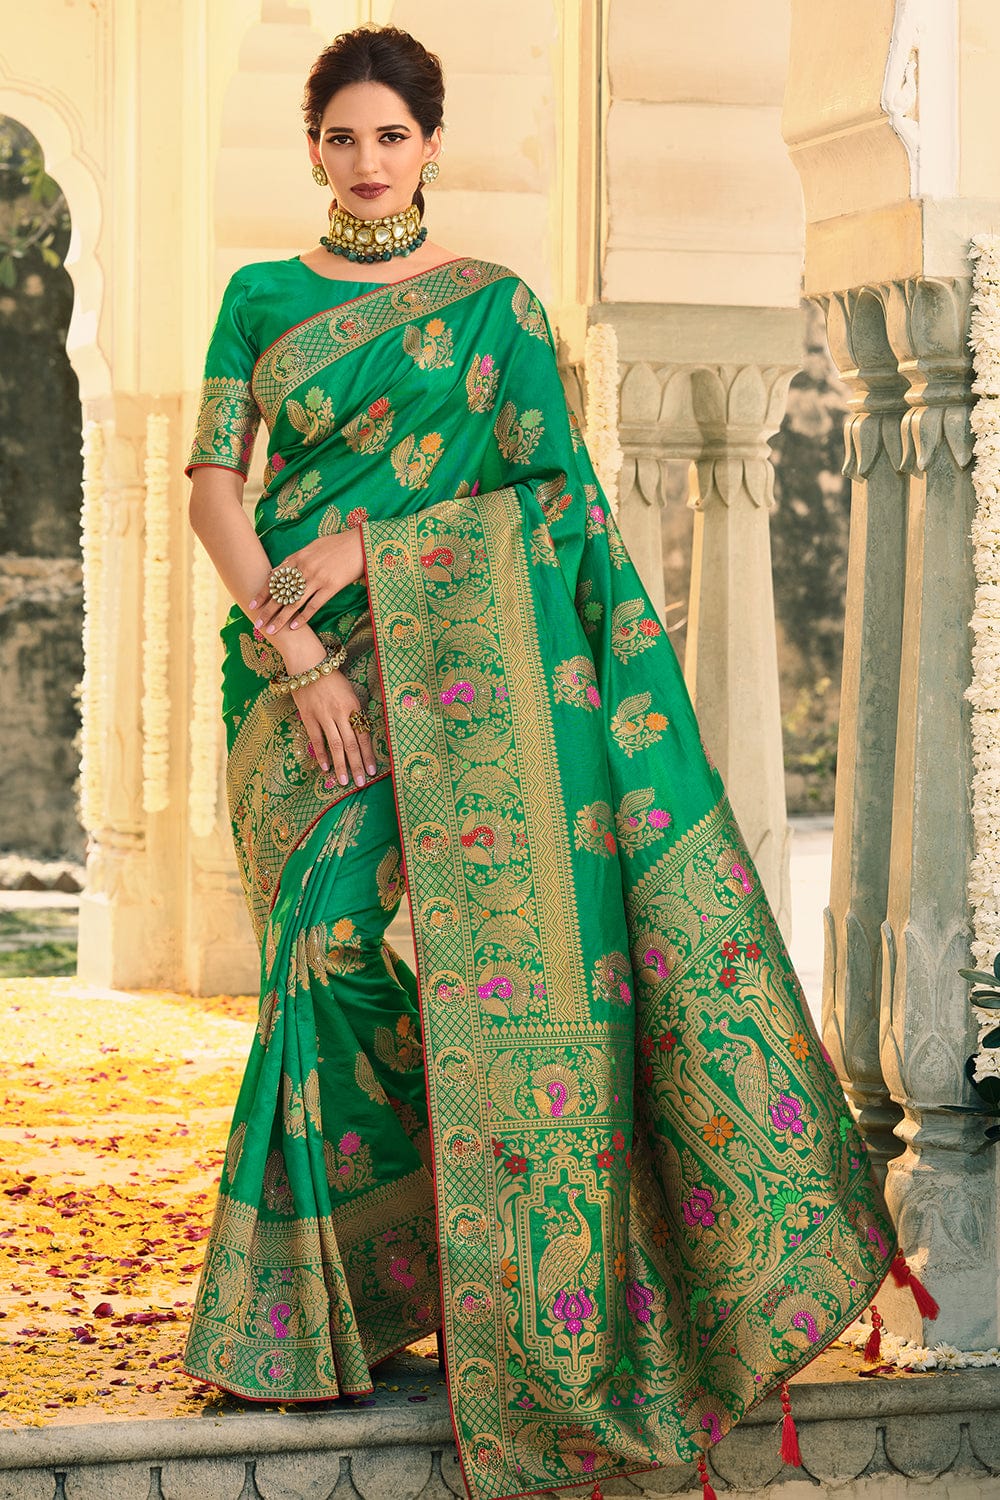 green banarasi saree